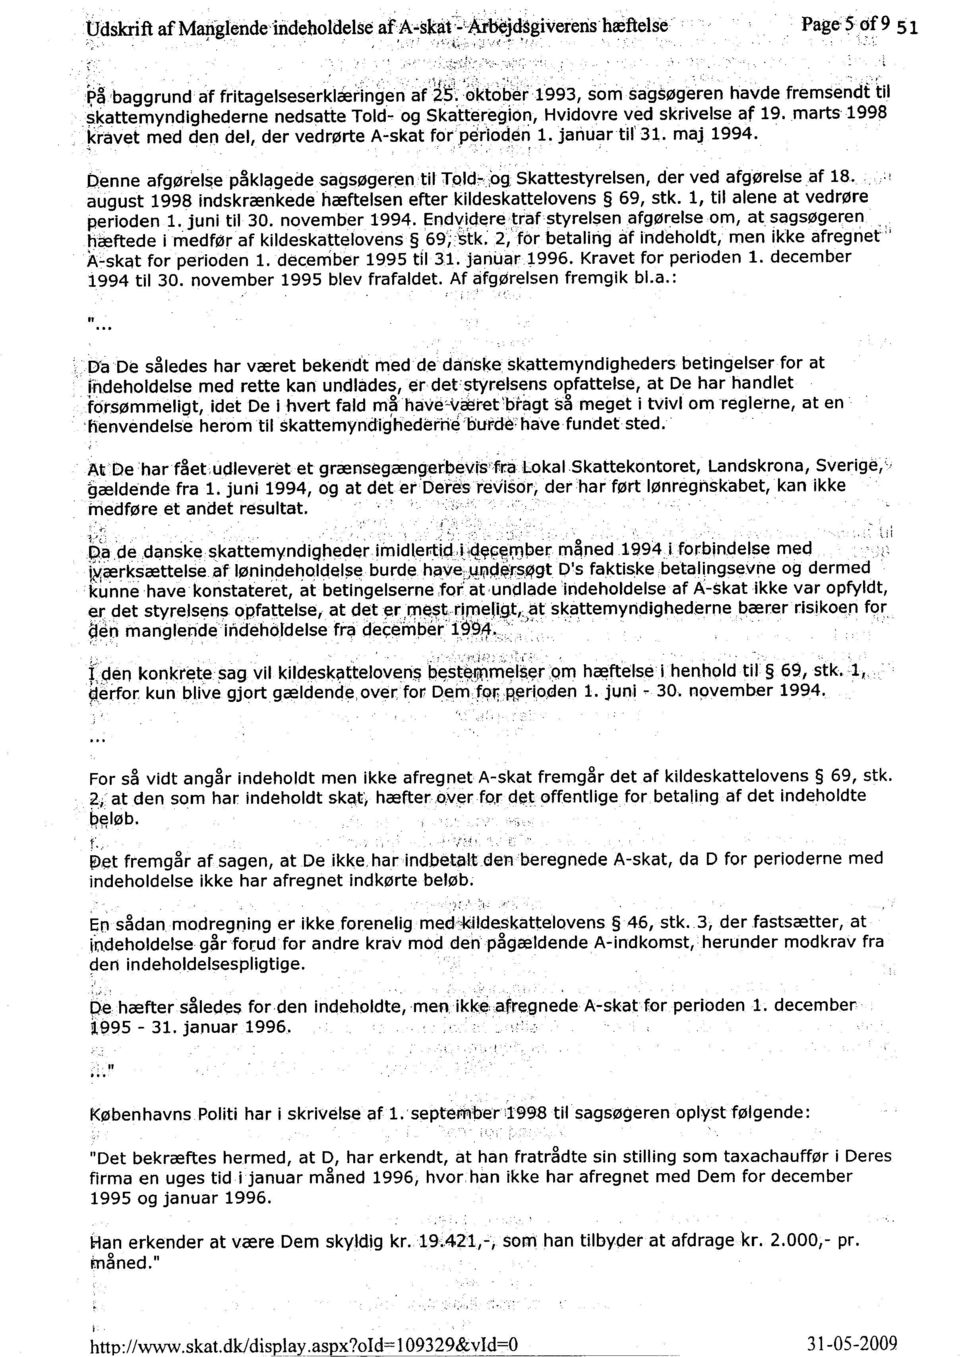 , og Ska'tt~Jegl()~, Hvidovre ved skrivelse af 19. marts 1998 kravet med den del, der vedrfzlrtea-skat for'per'ioden 1. januartif 31. maj 1994....'.. -..'.,",' :'.